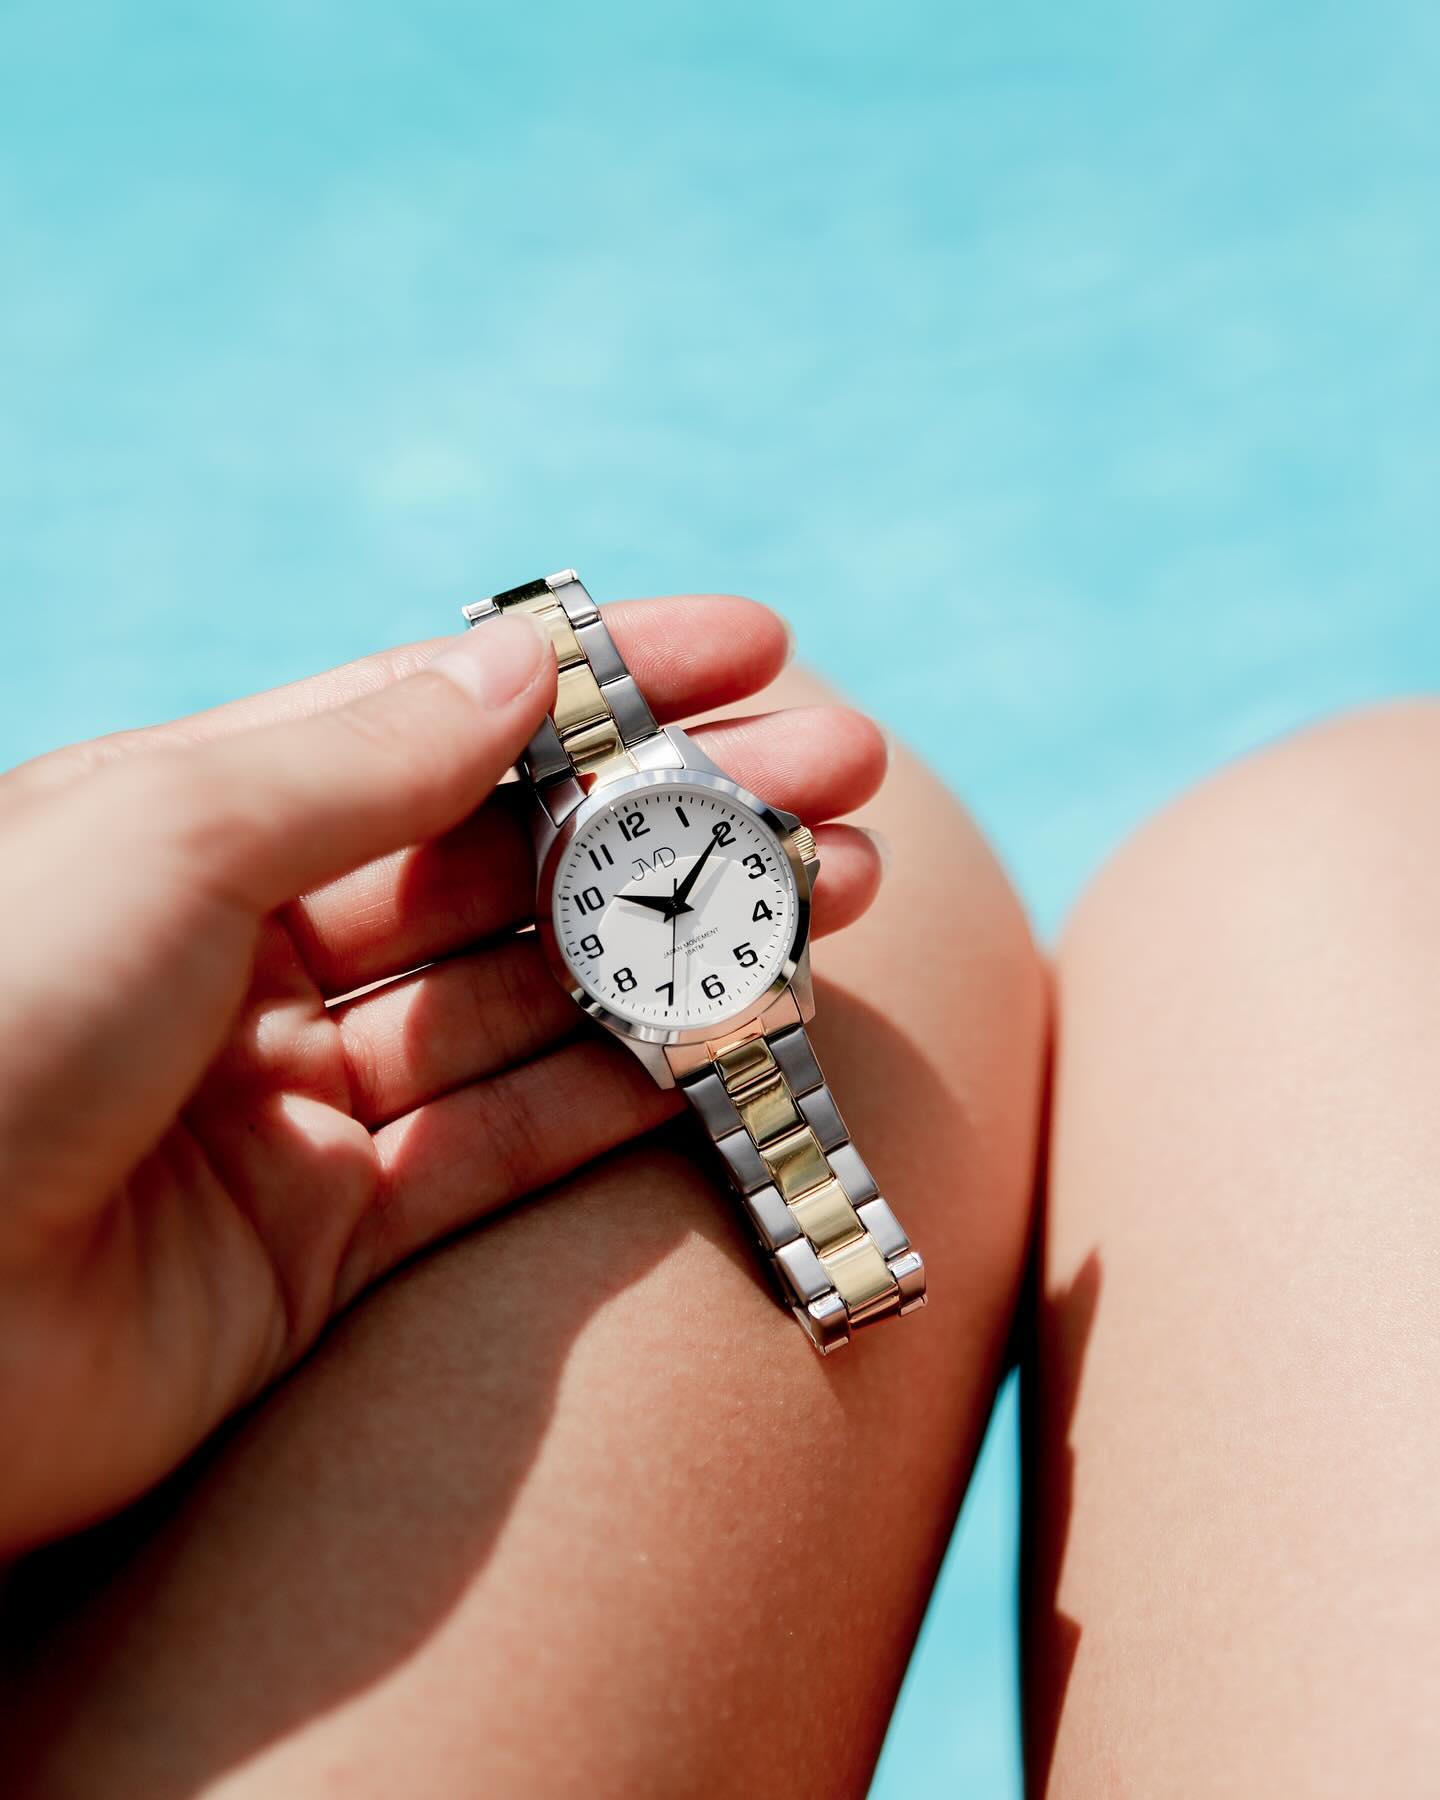 Léto přináší nové zážitky a dobrodružství, a vy si zasloužíte hodinky, které vás budou provázet každým okamžikem s elegancí a spolehlivostí. 🦢

Objevte naše dámské hodinky s vodotěsností 10 ATM, ideální pro každou ženu, která chce zářit nejen na suchu, ale i ve vodě.💦

#JVD #watch #watches #watchessentials #10atm #summerjewelry #jewellery #jewelry